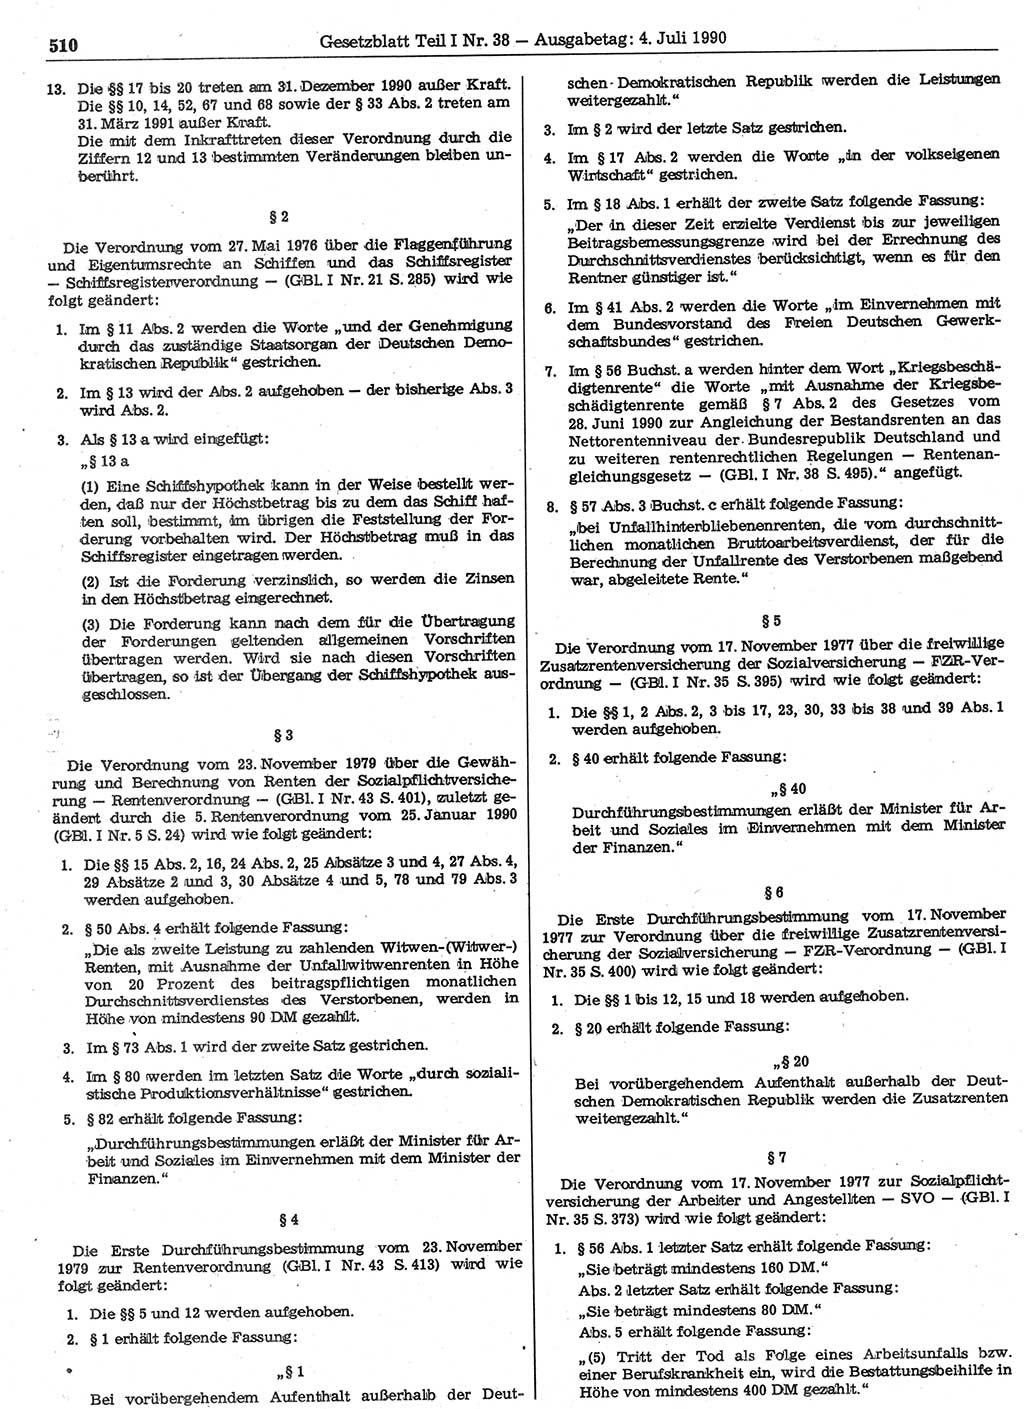 Gesetzblatt (GBl.) der Deutschen Demokratischen Republik (DDR) Teil Ⅰ 1990, Seite 510 (GBl. DDR Ⅰ 1990, S. 510)